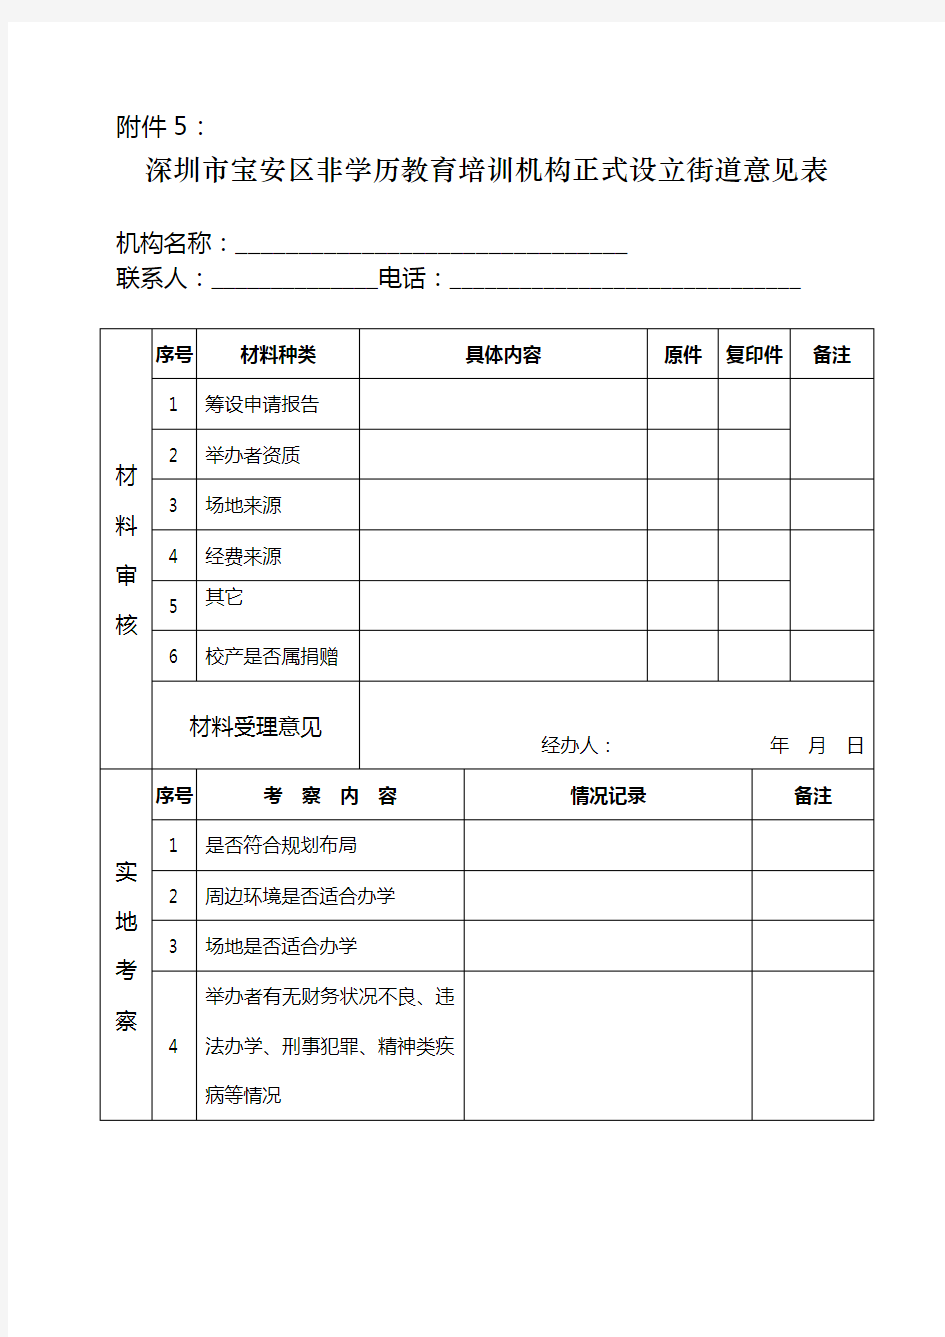 深圳市宝安区非学历教育培训机构正式设立申请表格